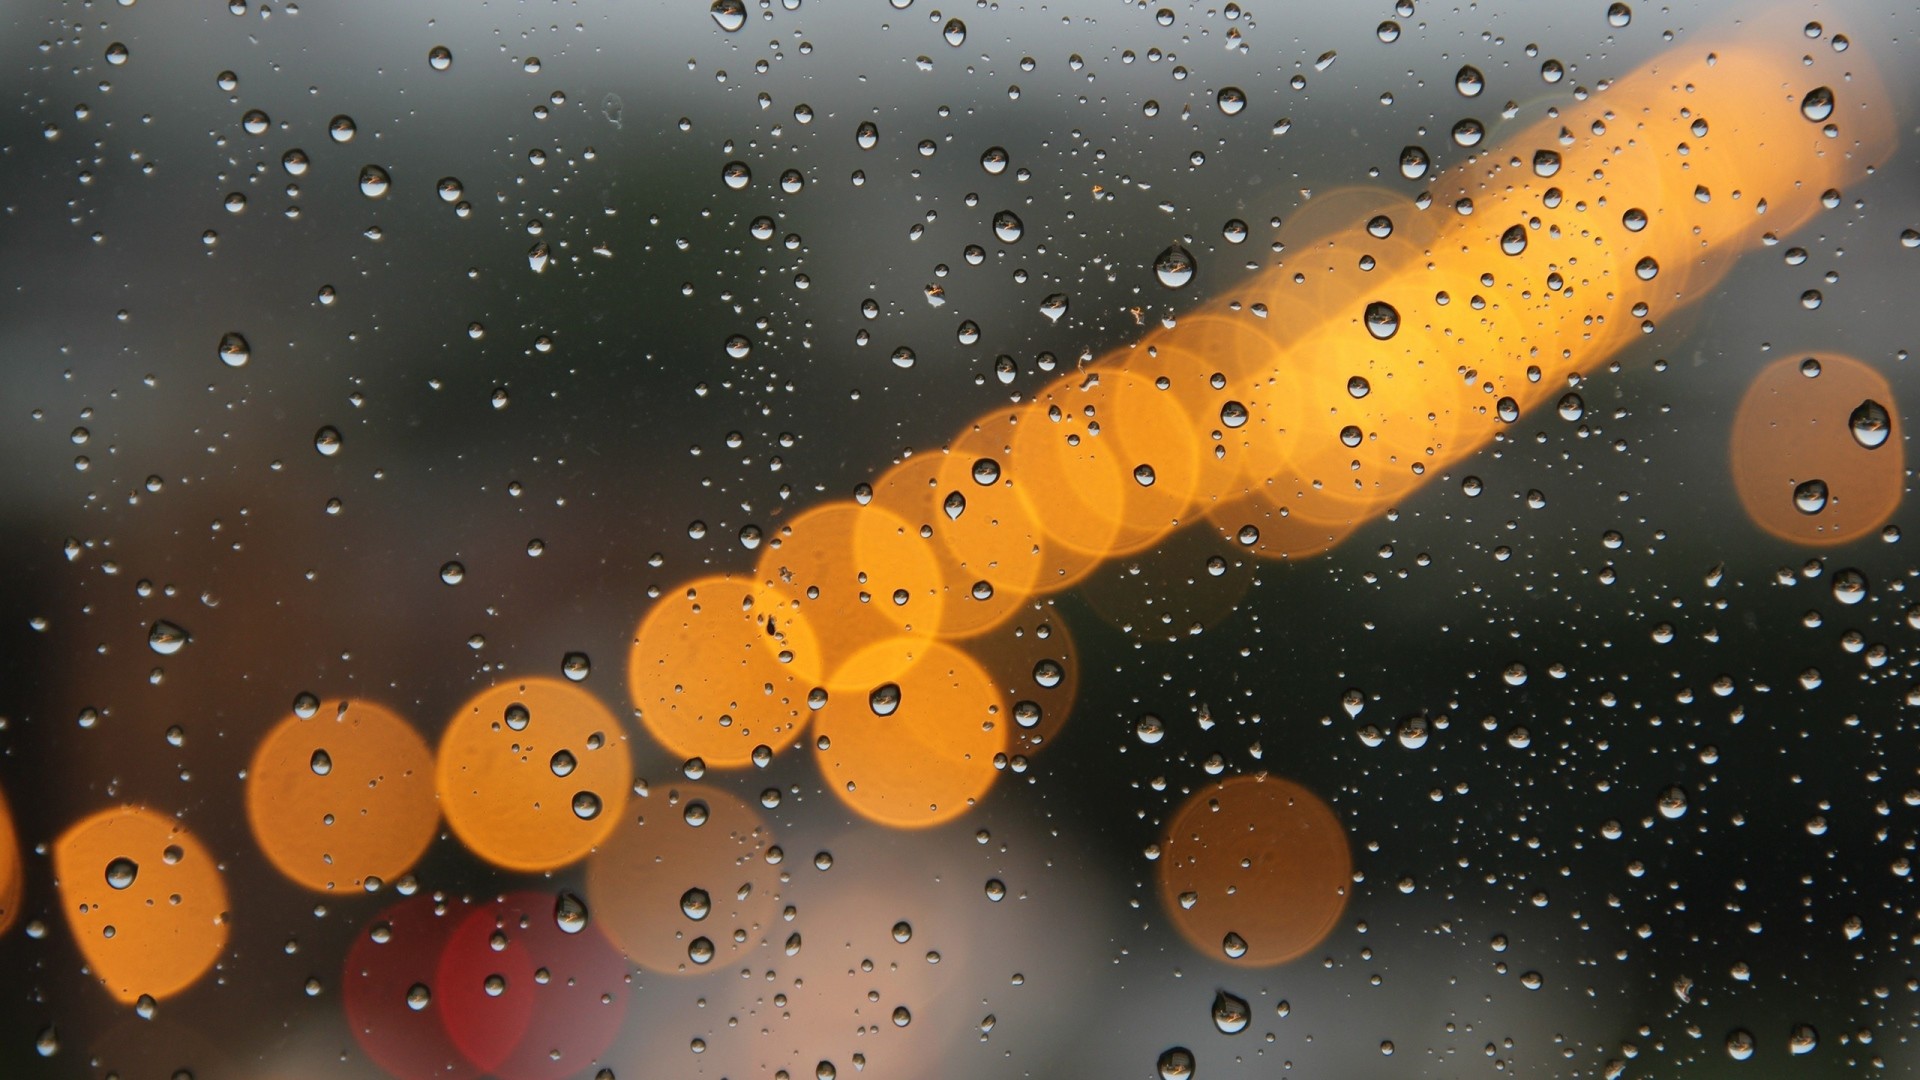 1920x1080 Full HD Wallpaper window drop rain light blurry